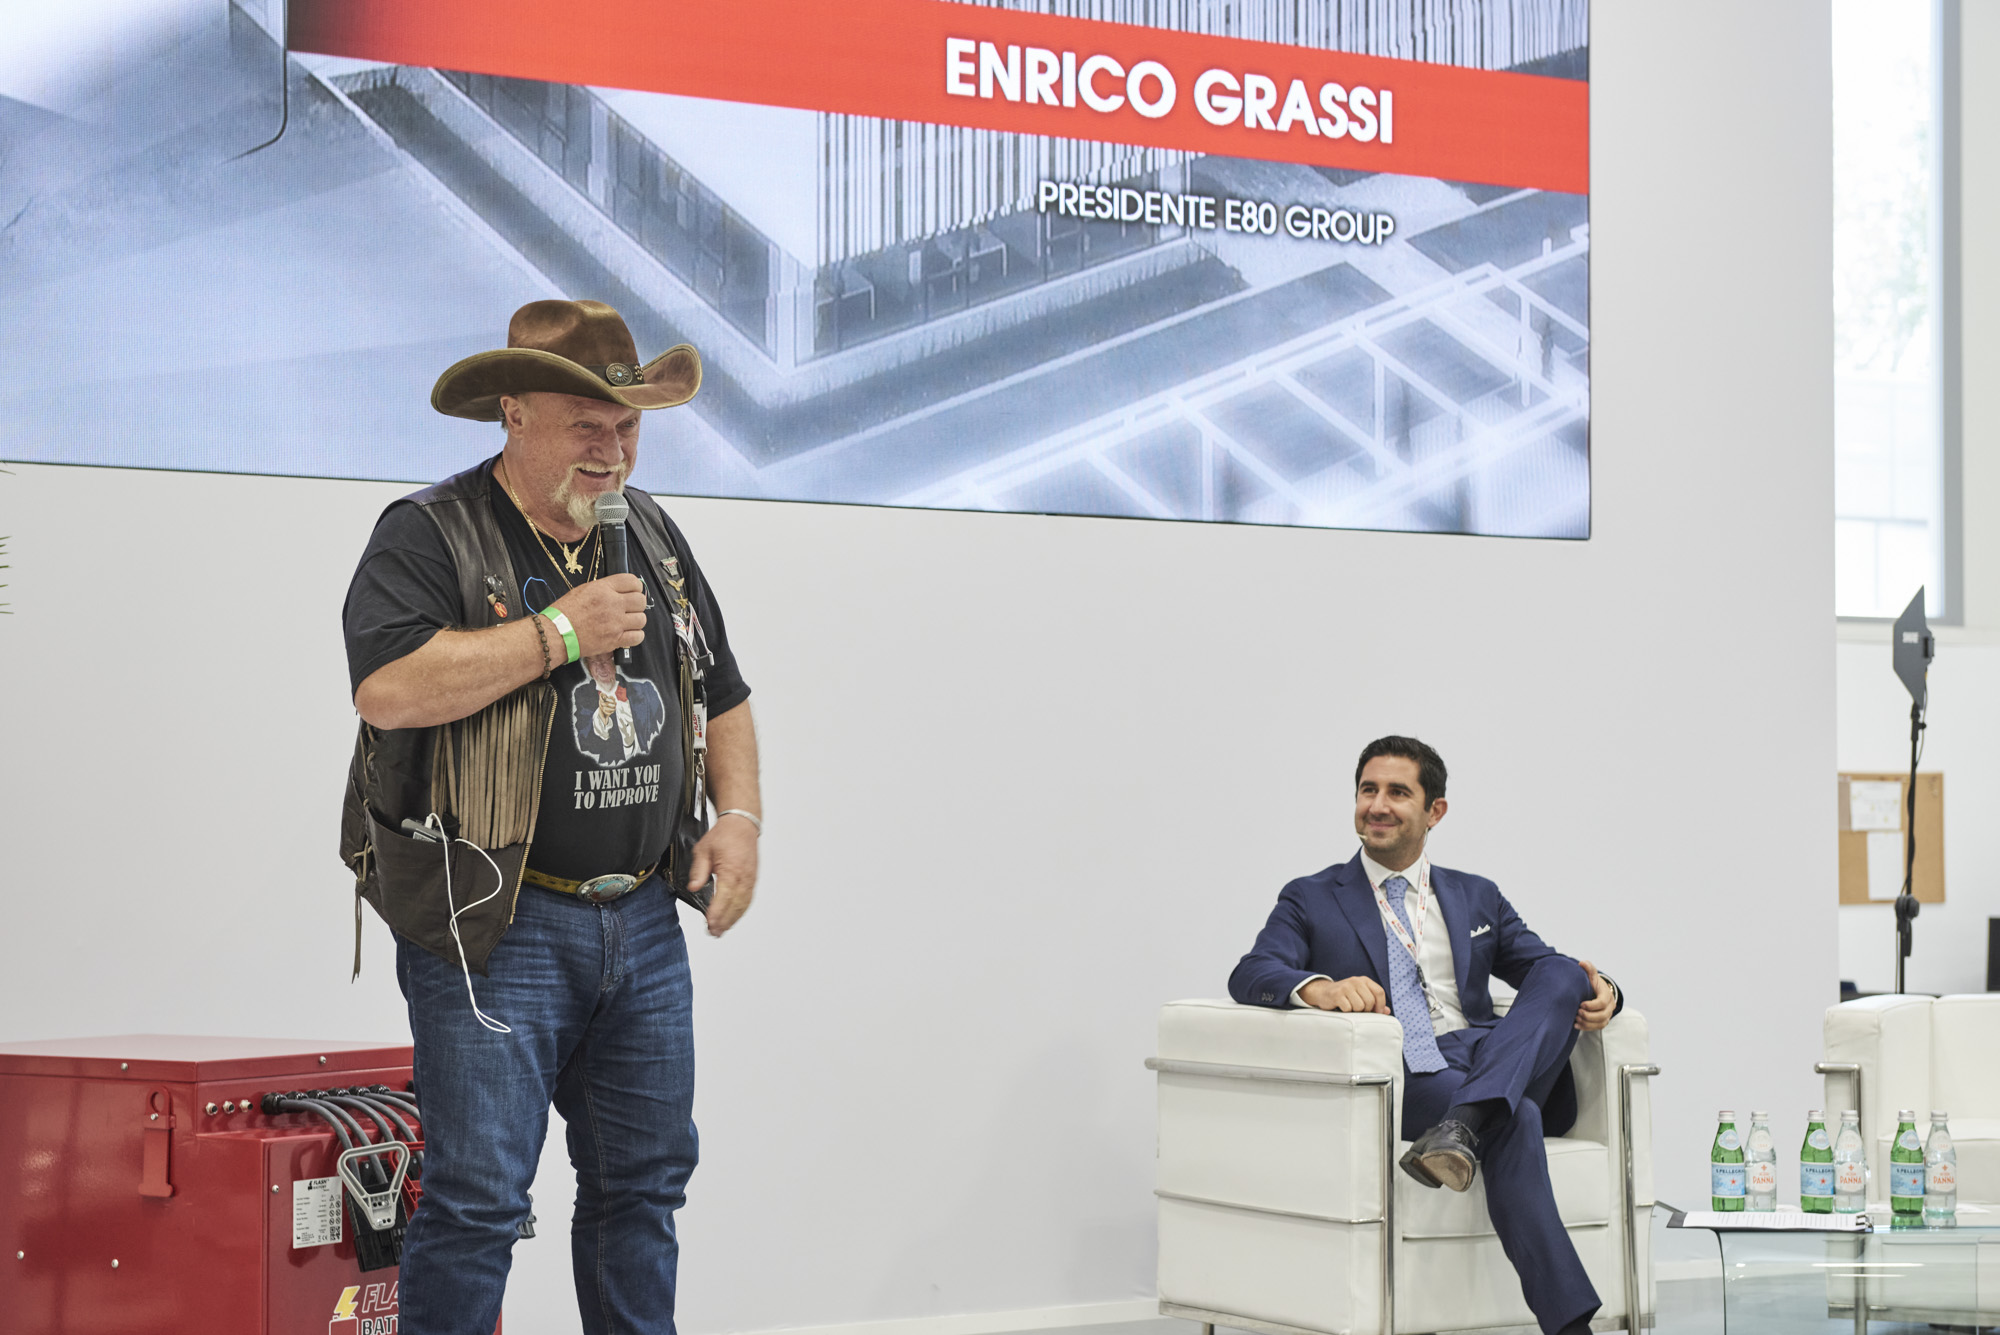 Flash Battery Feierliche Eröffnung Enrico Grassi Marco Righi